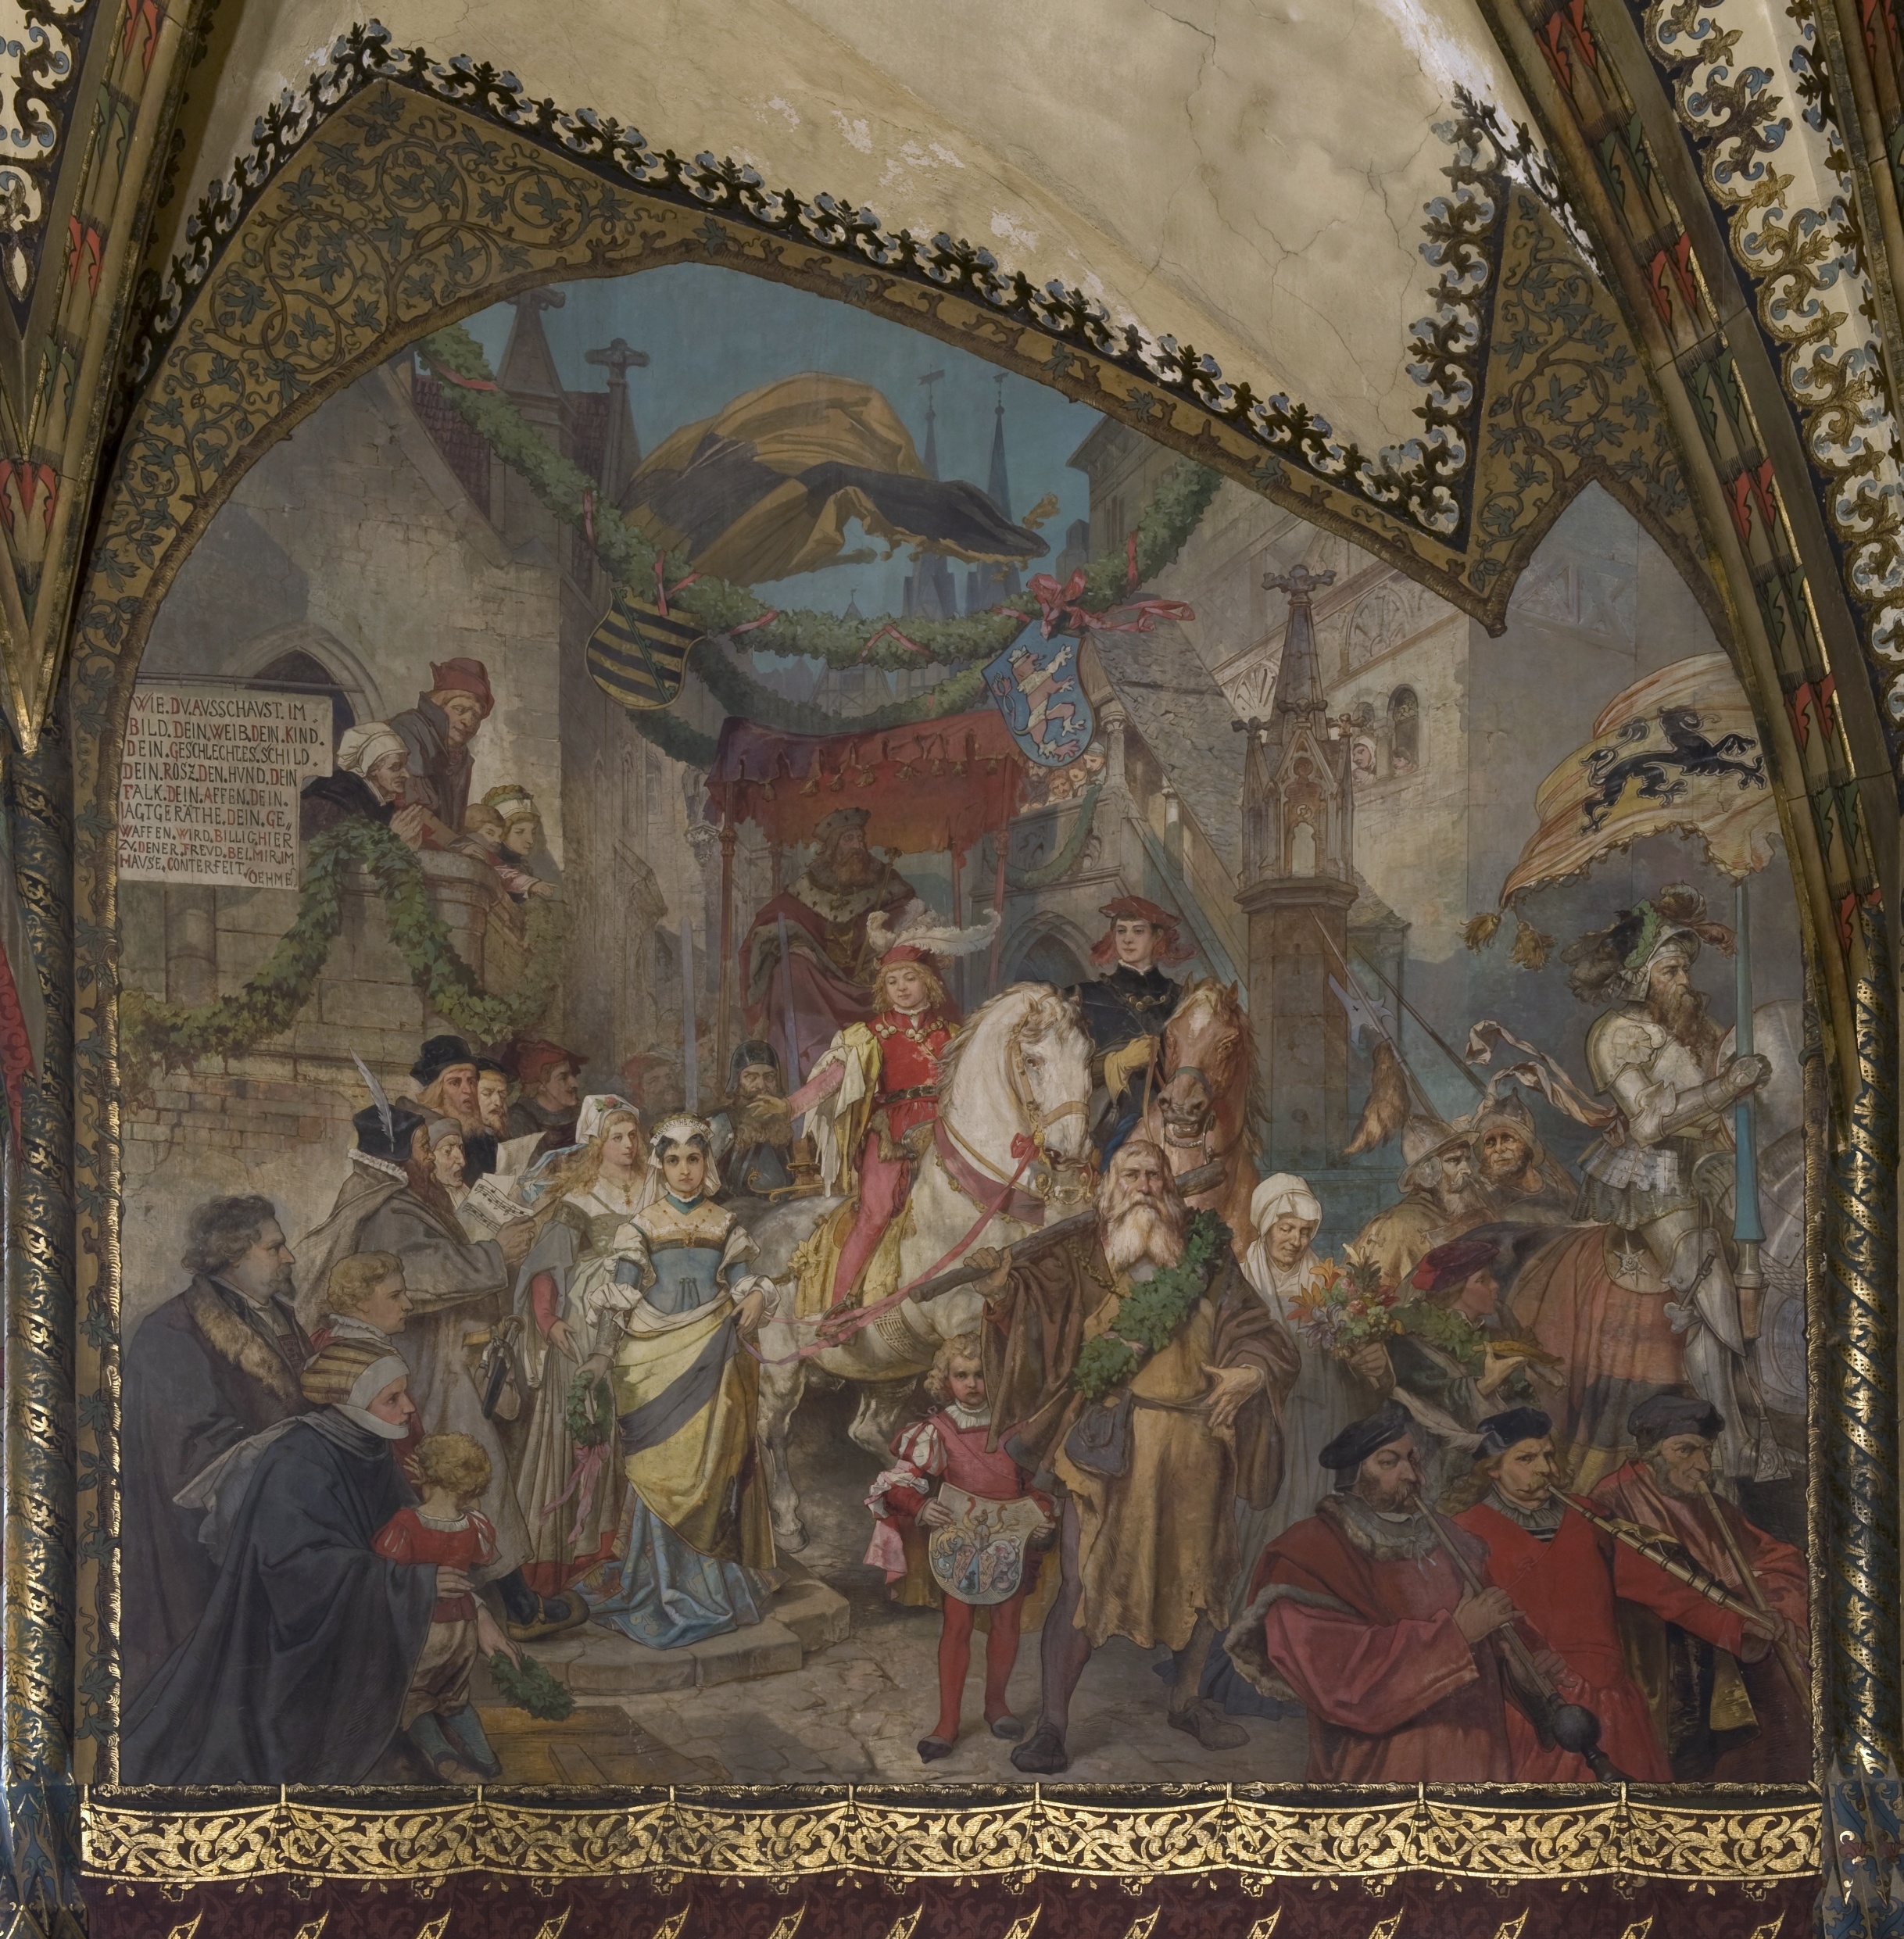 Wandbild:
"Der Altenburger Prinzenraub, 1455 - Teil 3: Der feierliche Einzug der befreiten Prinzen" (SBG gGmbH CC BY-NC-SA)